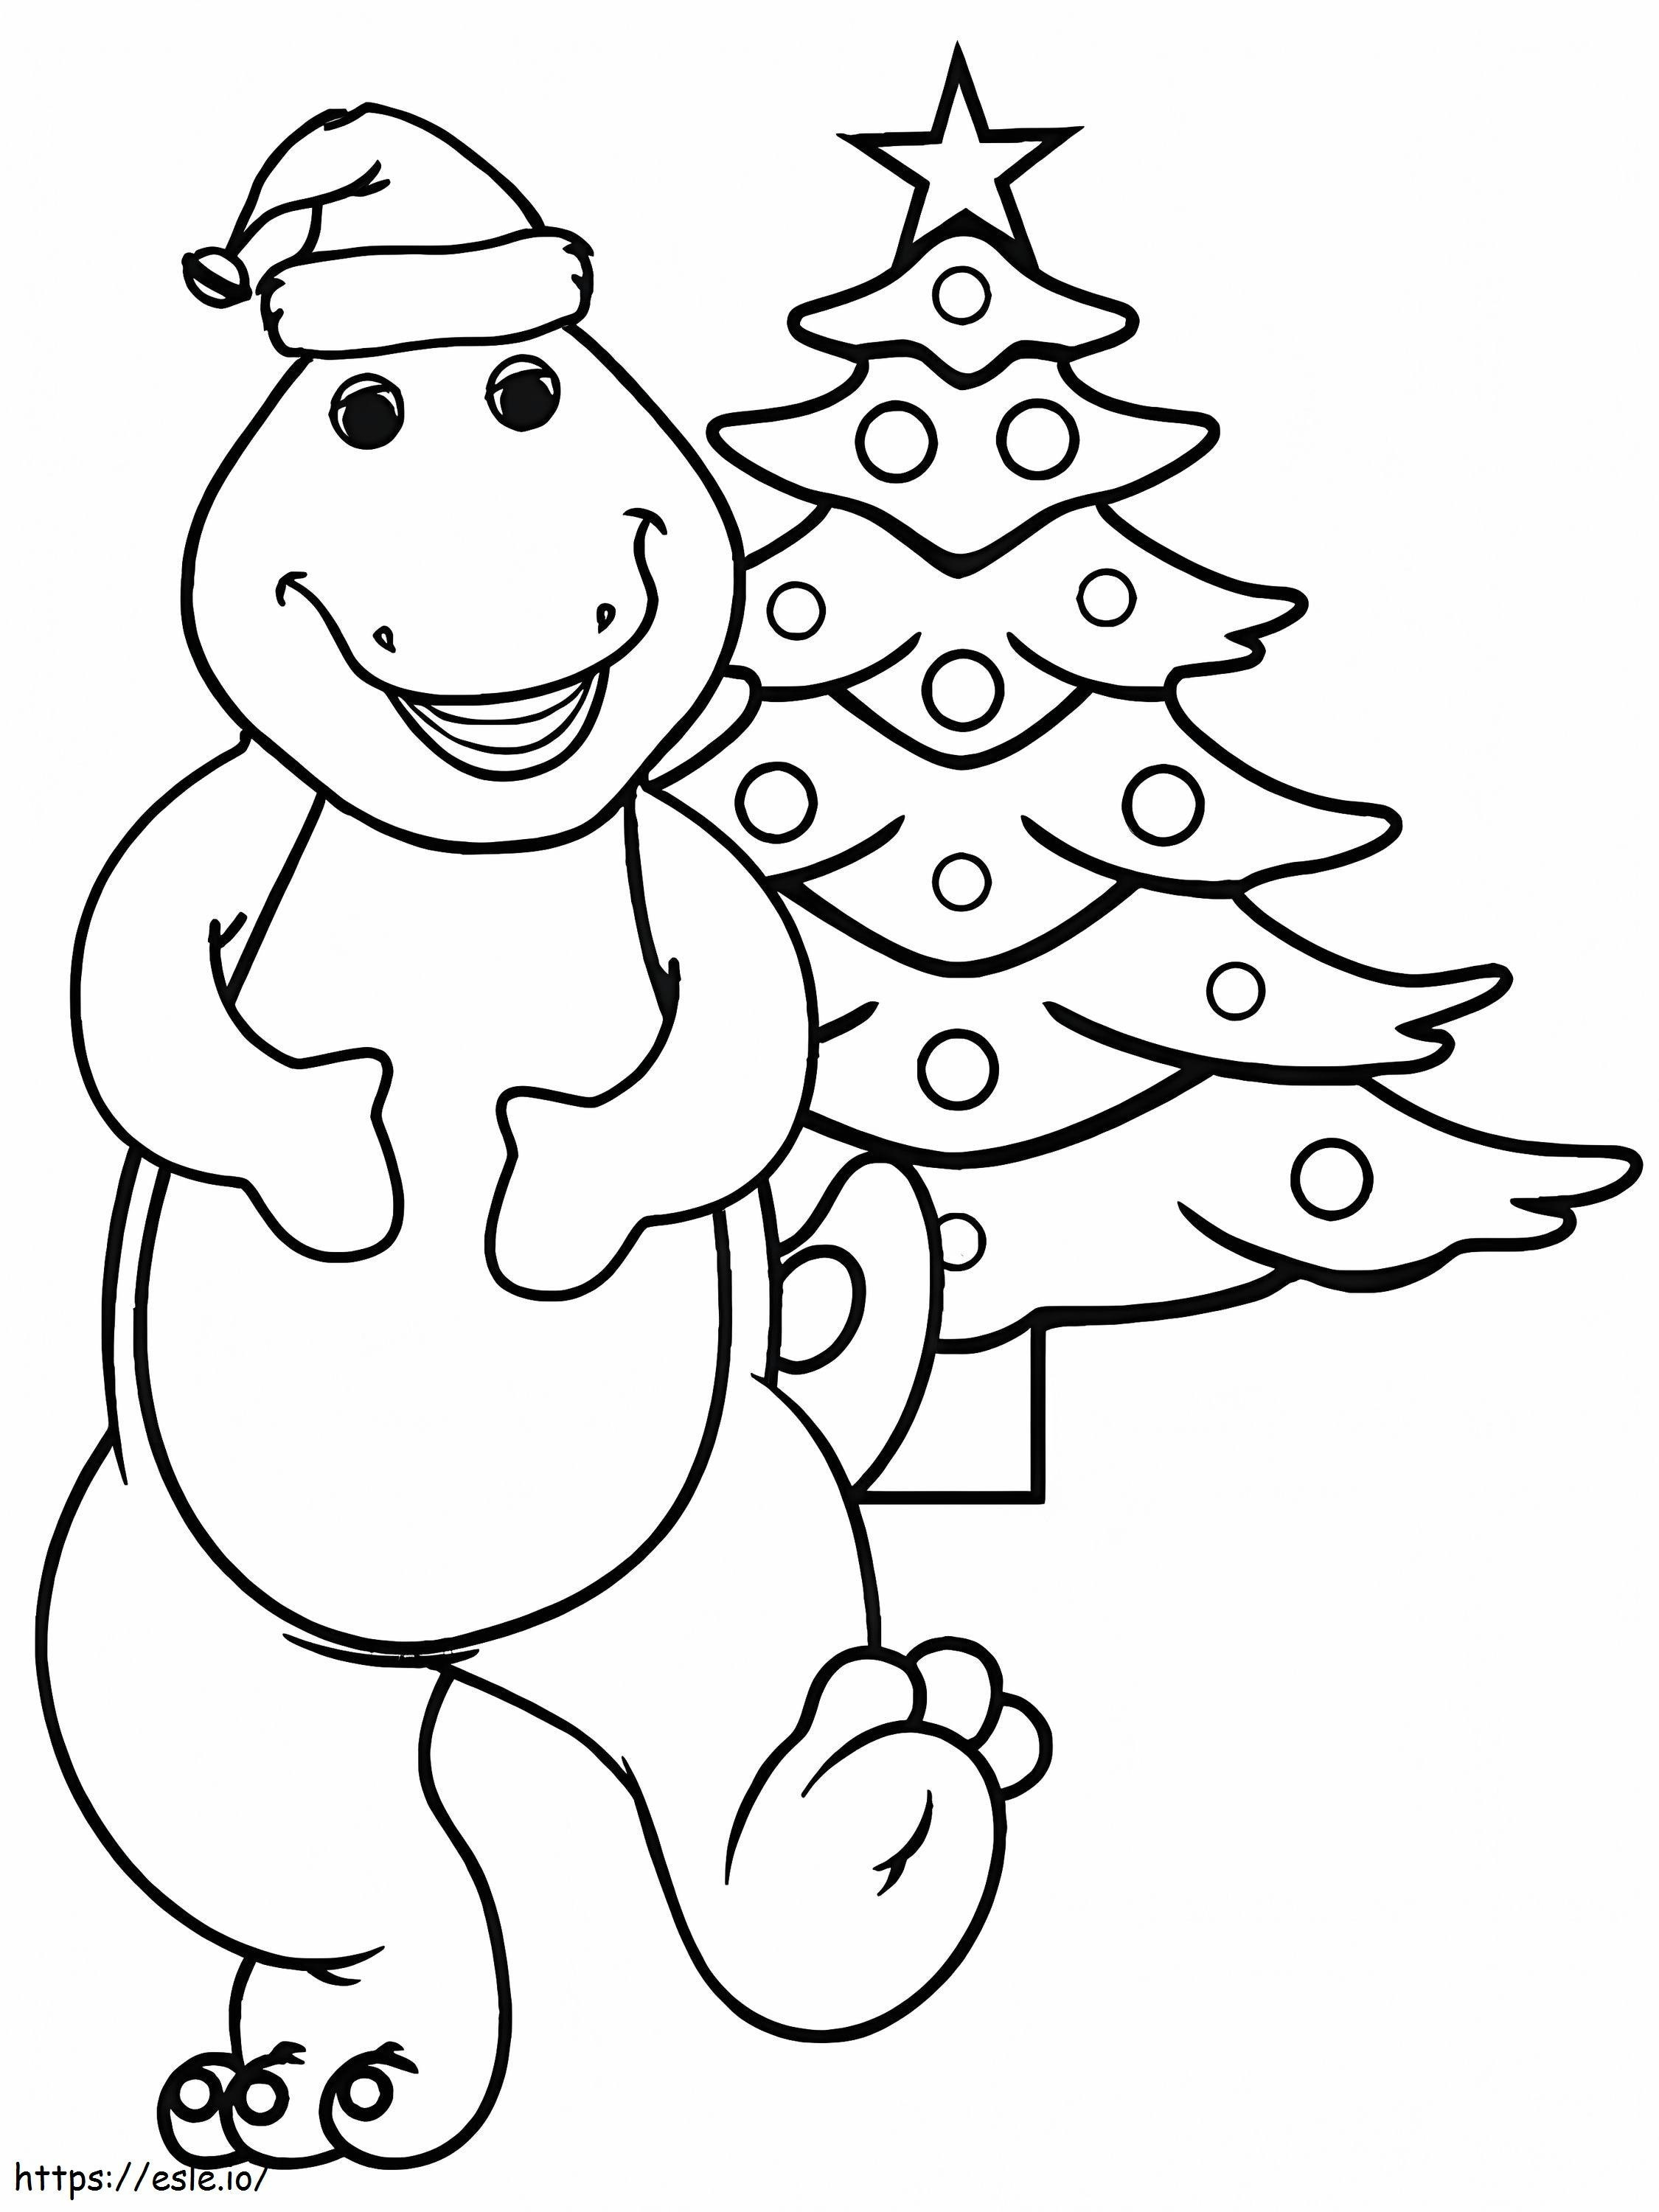 Dinossauro dos desenhos animados com árvore de Natal para colorir